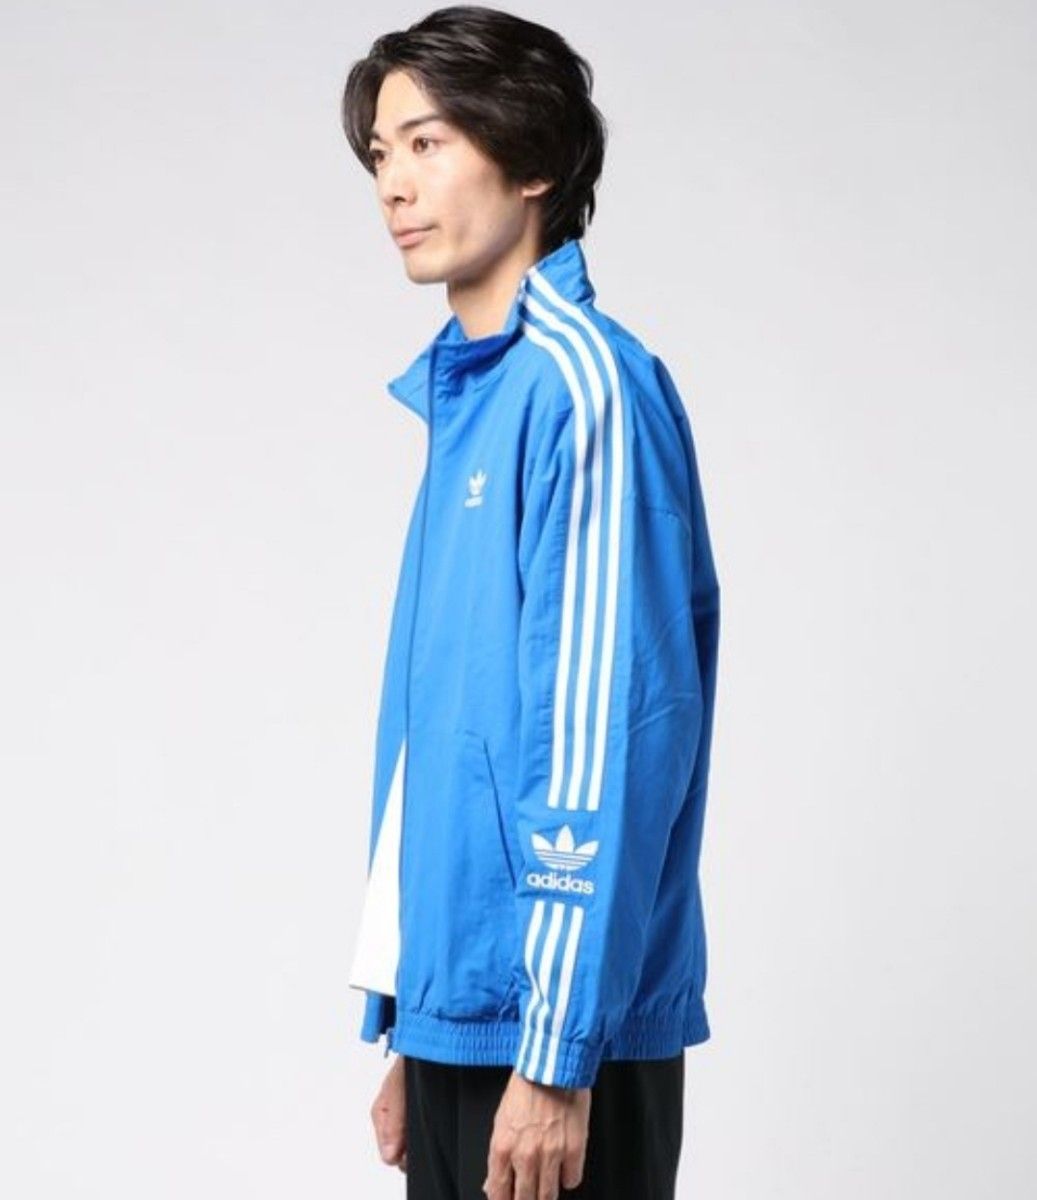 adidas 青 ロックアップ ジャージ ナイロンジャケット ブルゾン 男性L アディダス シャカシャカ ジャケット 刺繍ロゴ